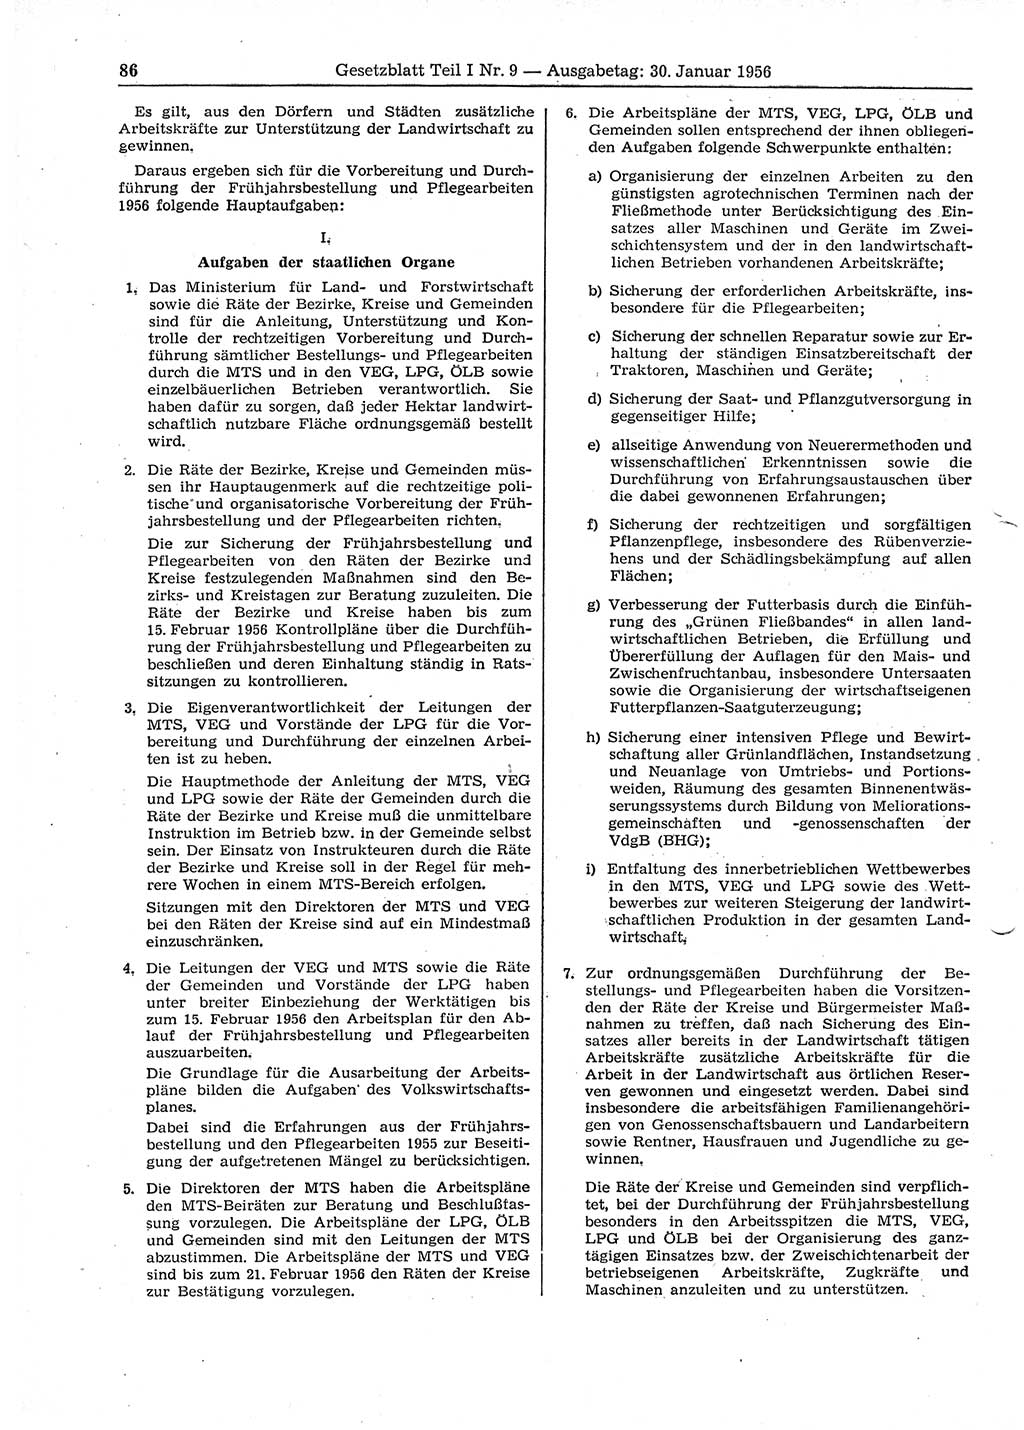 Gesetzblatt (GBl.) der Deutschen Demokratischen Republik (DDR) Teil Ⅰ 1956, Seite 86 (GBl. DDR Ⅰ 1956, S. 86)